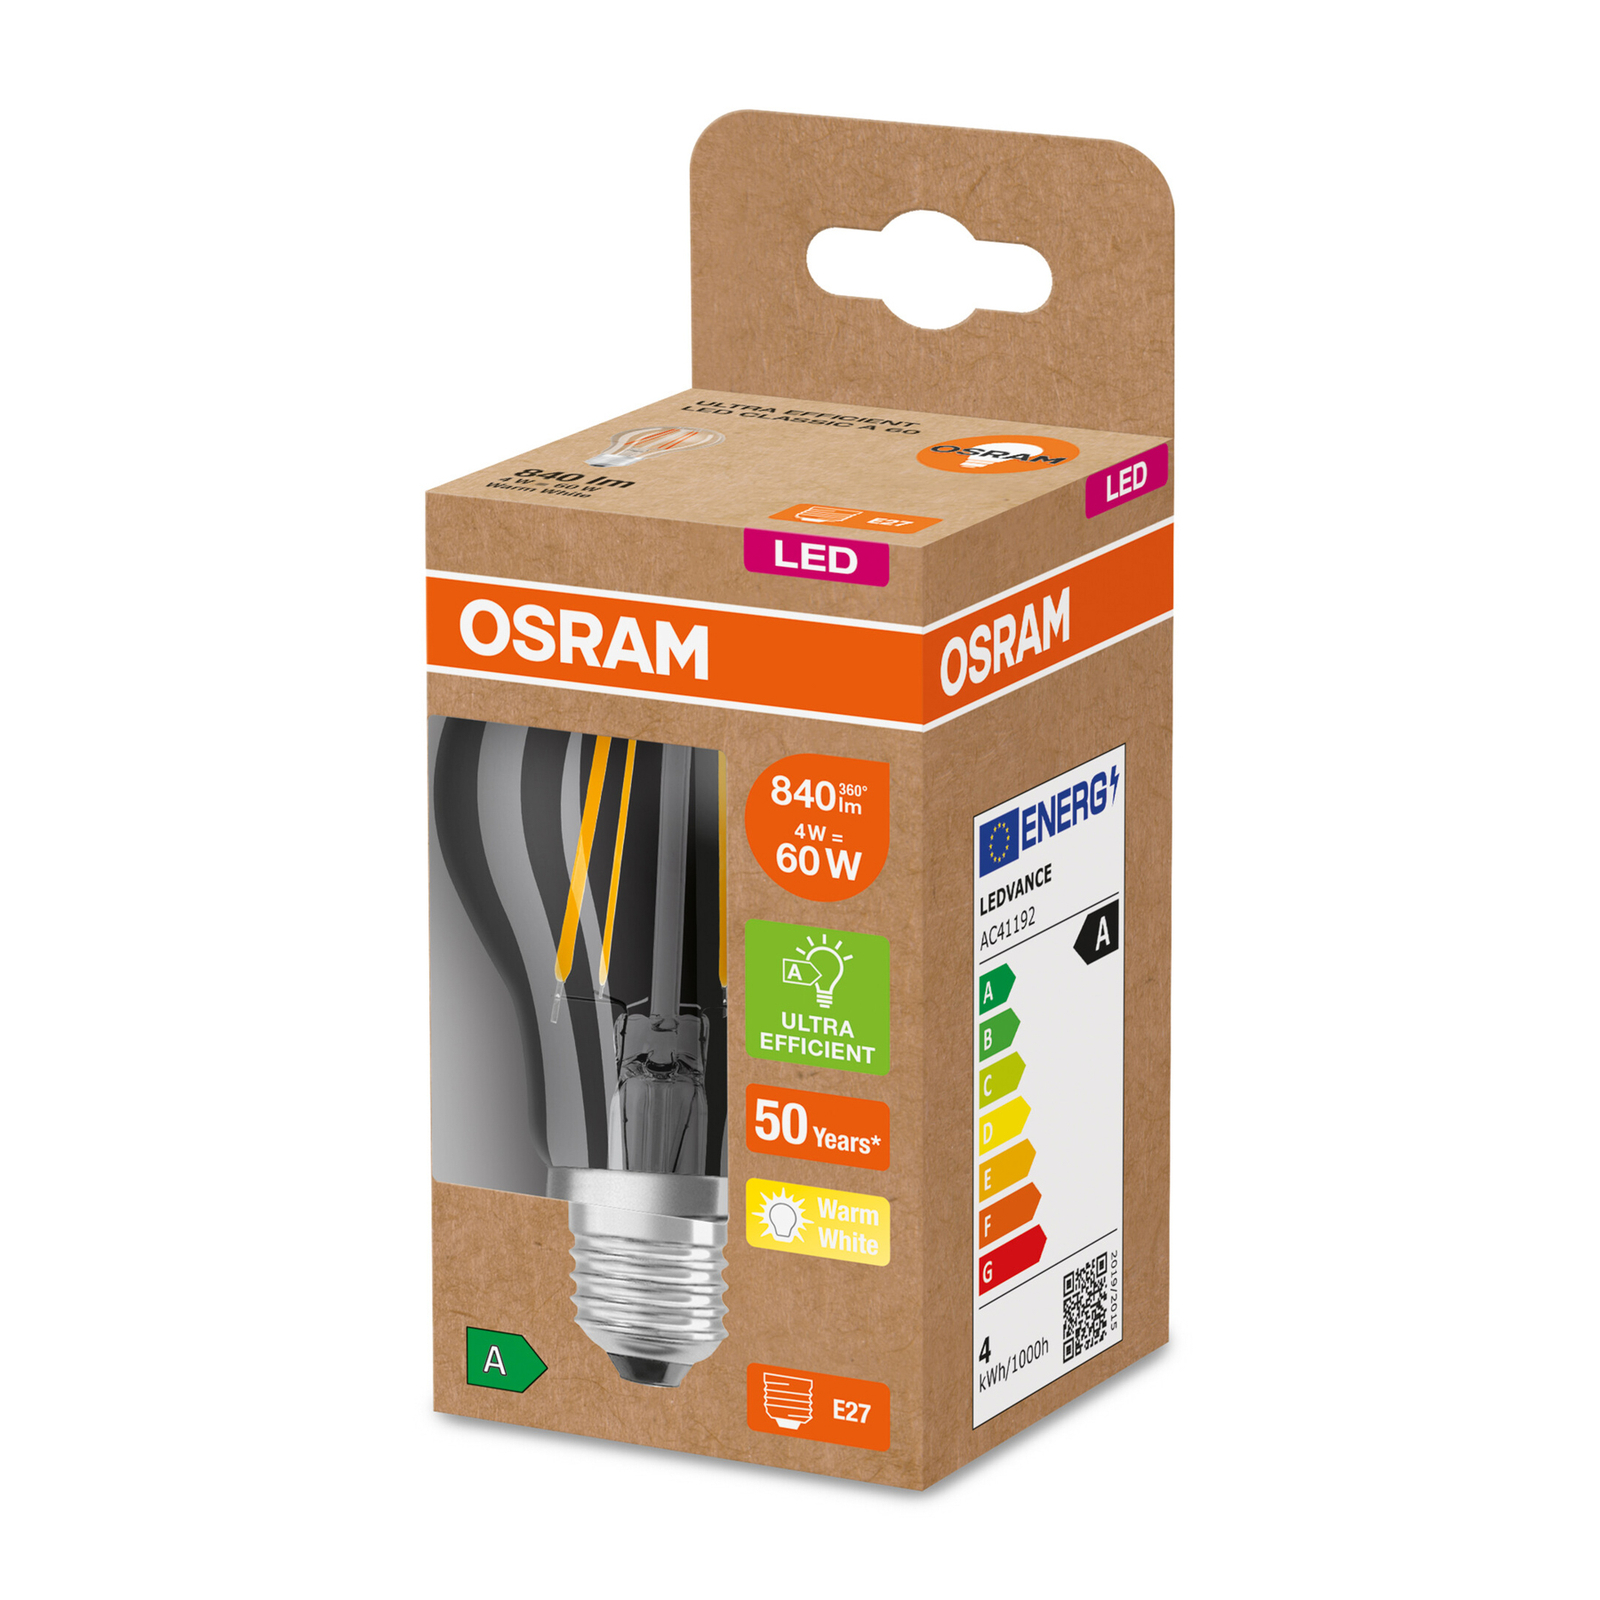 OSRAM LED lamp E27 A60 4W 840lm 3.000K helder